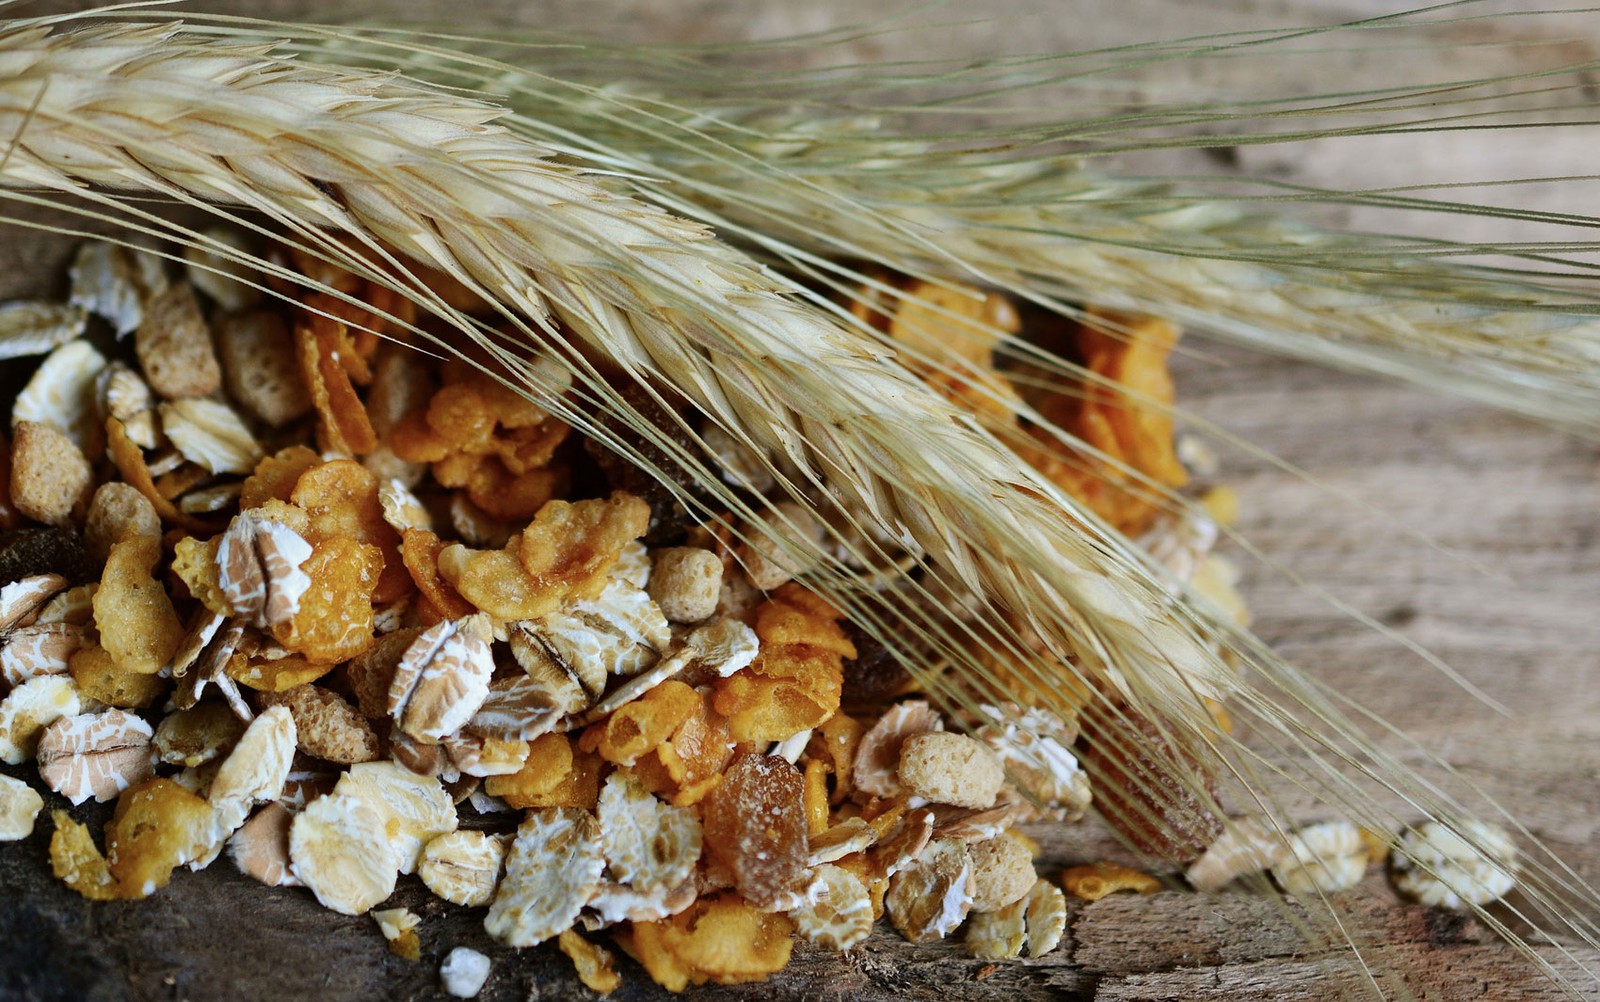 Fibras e grãos aumentam sensação de saciedade (Foto: Congerdesign/Creative Commons)